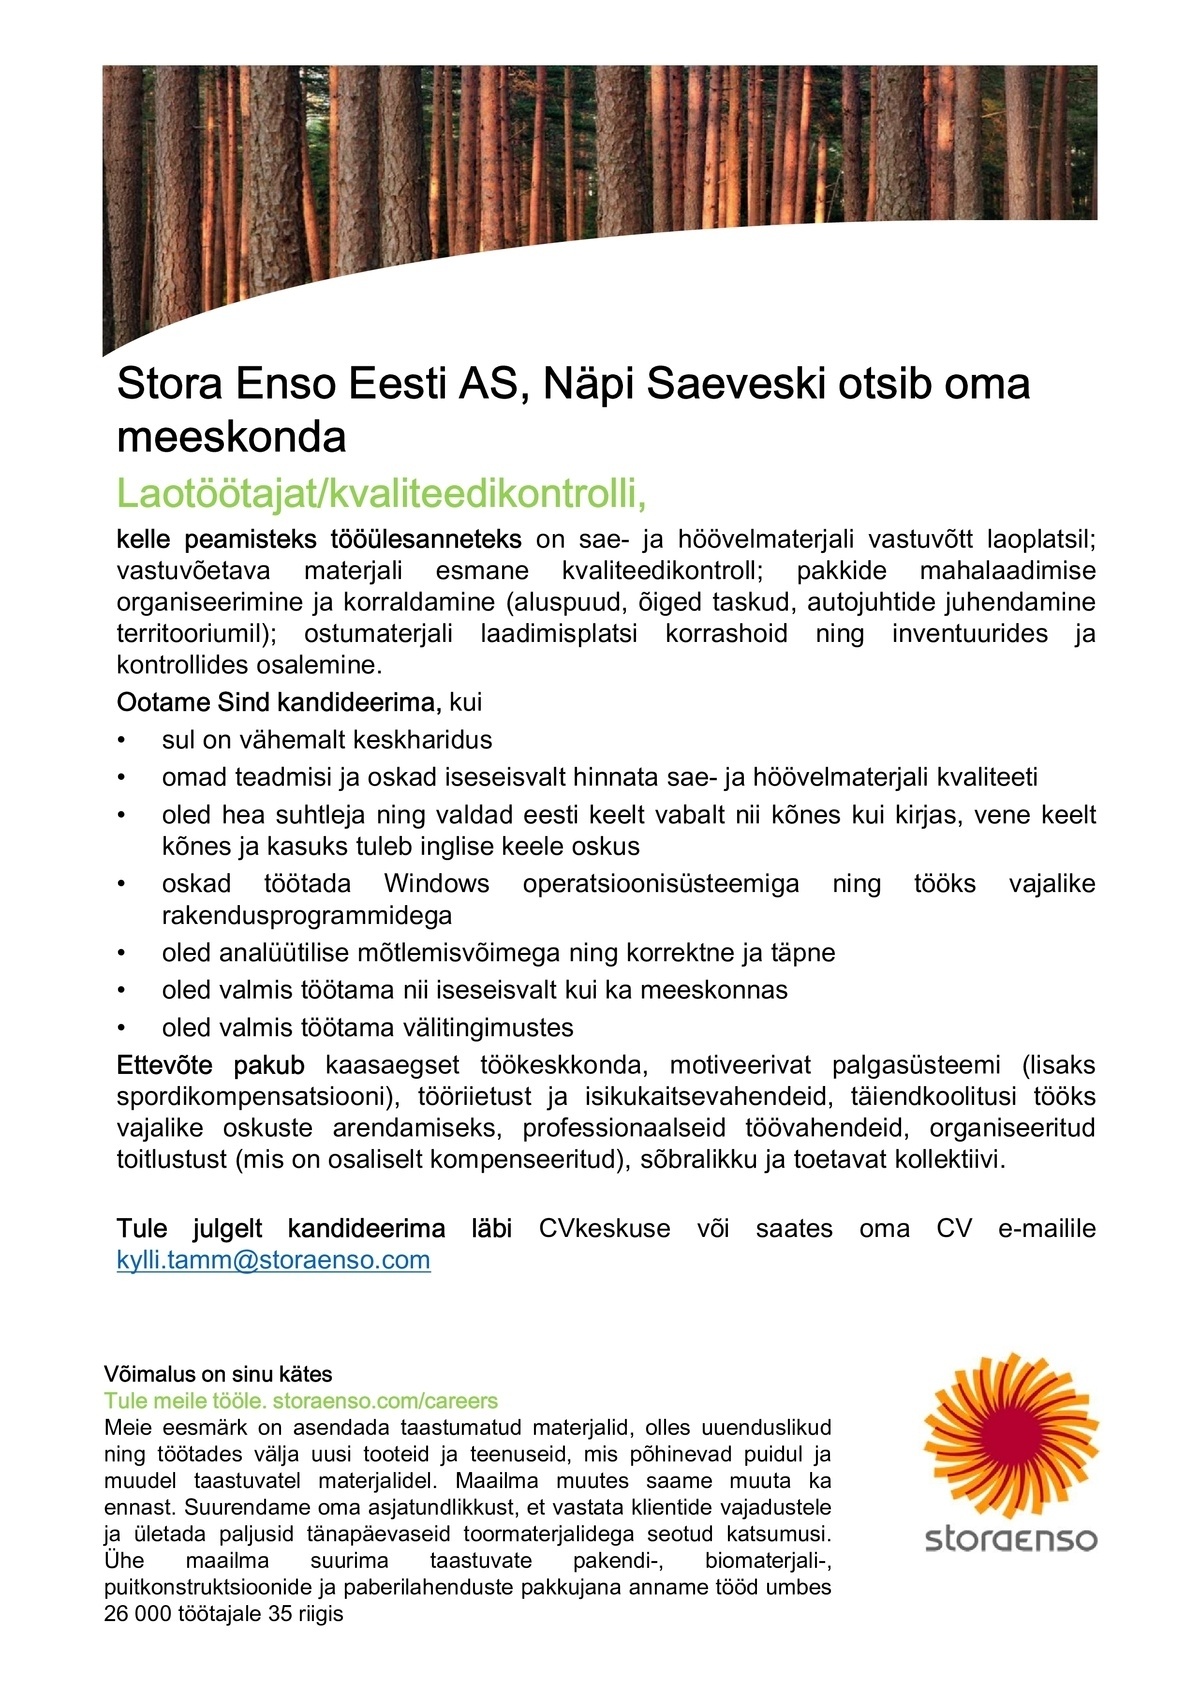 Stora Enso Eesti AS Laotöötaja/kvaliteedikontroll